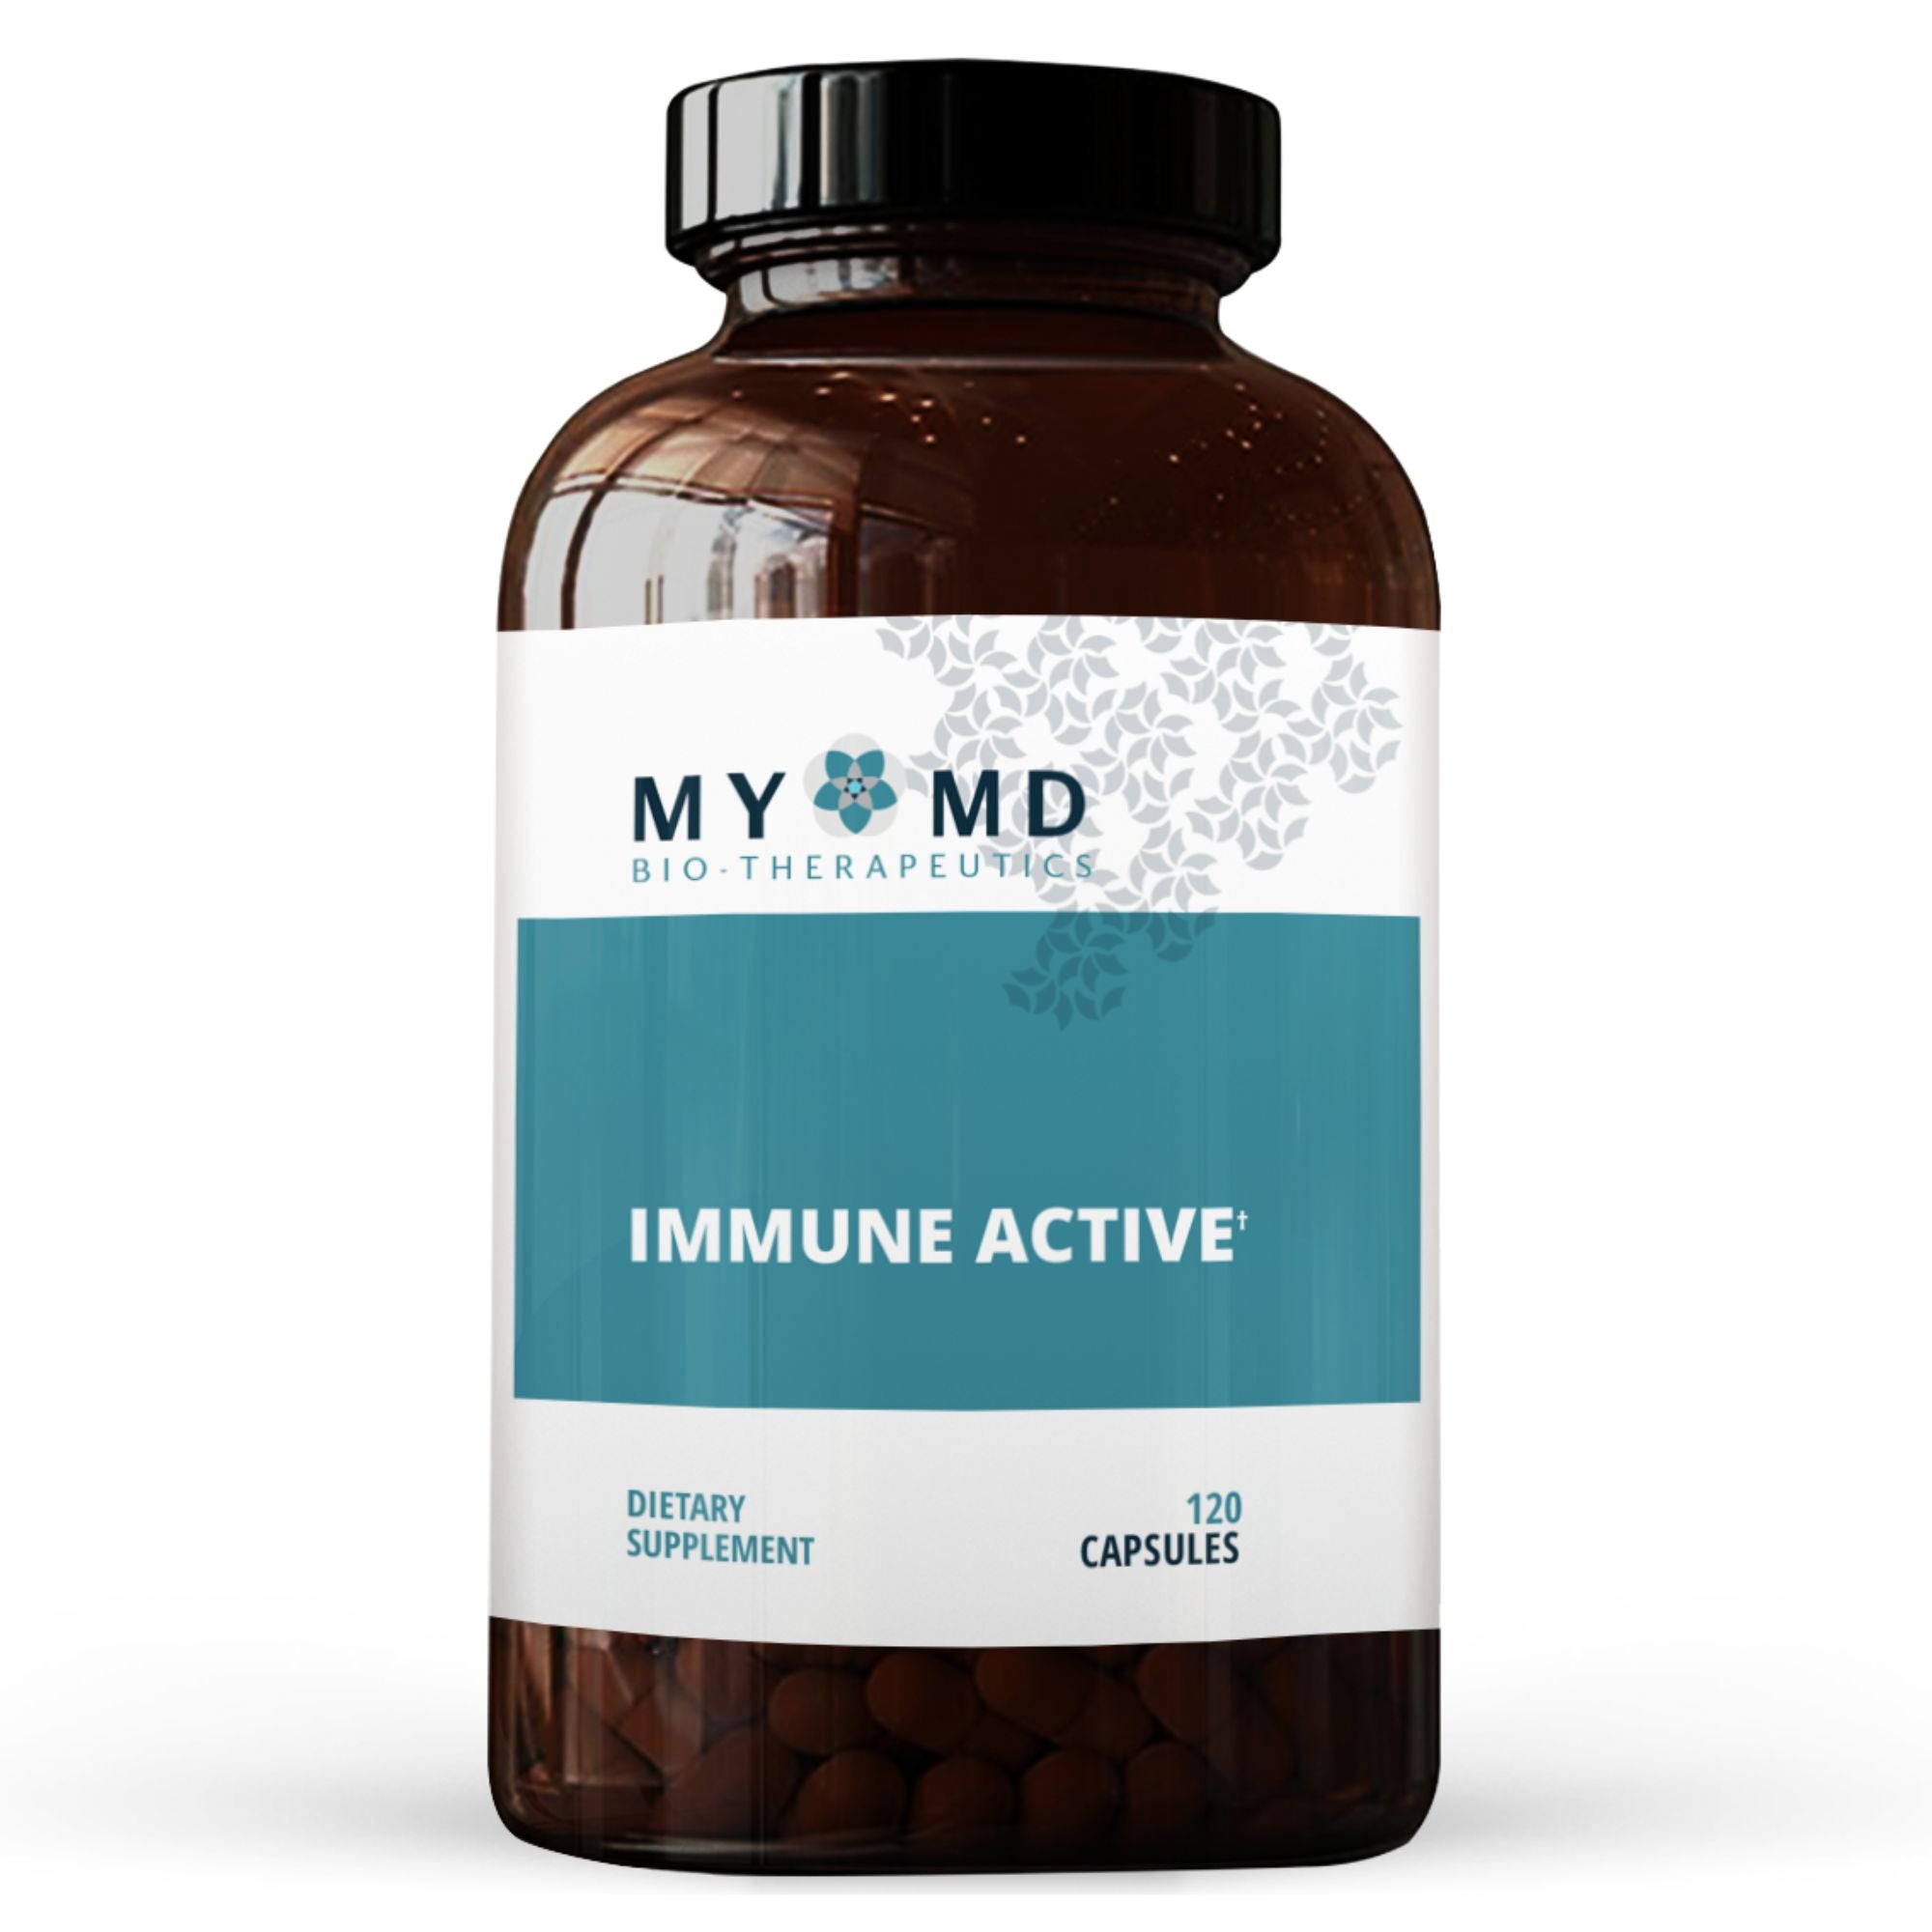 Immune Active